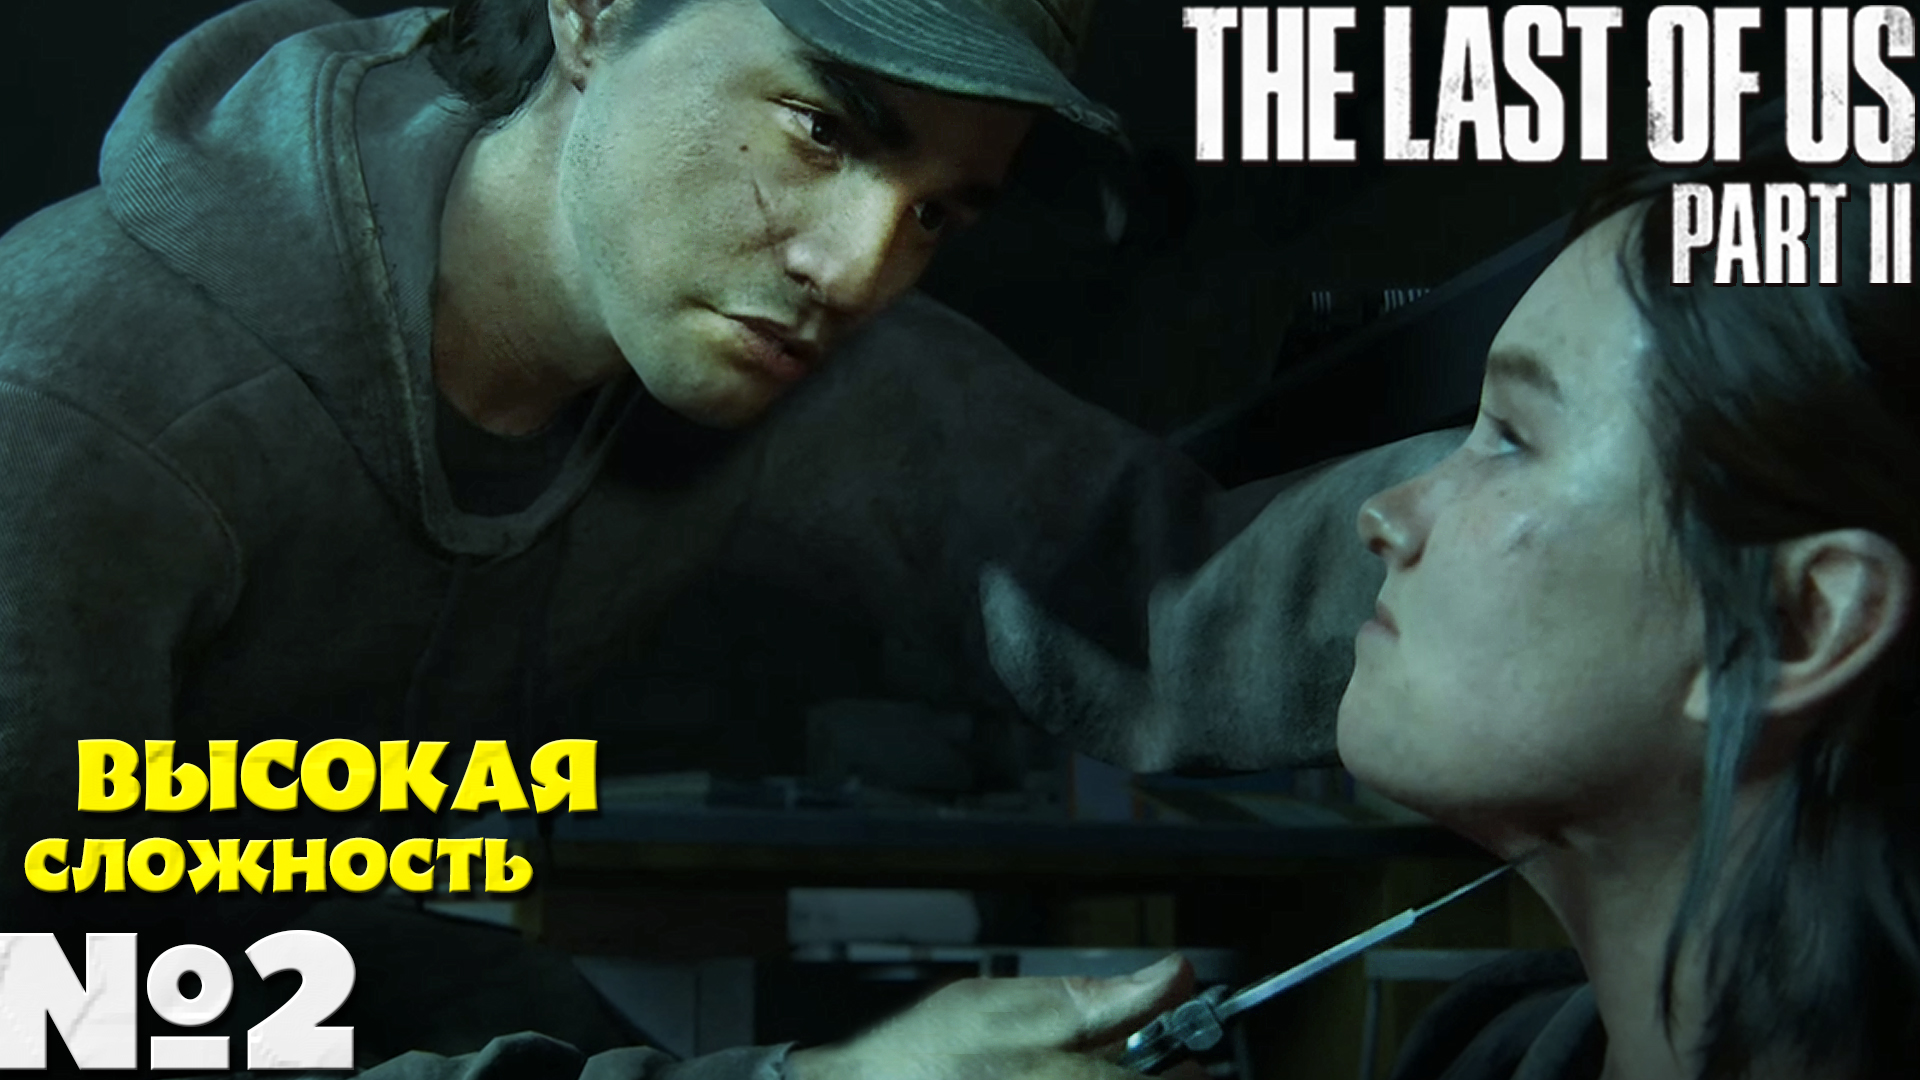 The Last of Us 2 (Одни из нас 2) - Прохождение. Часть №2. Сложность Высокая.